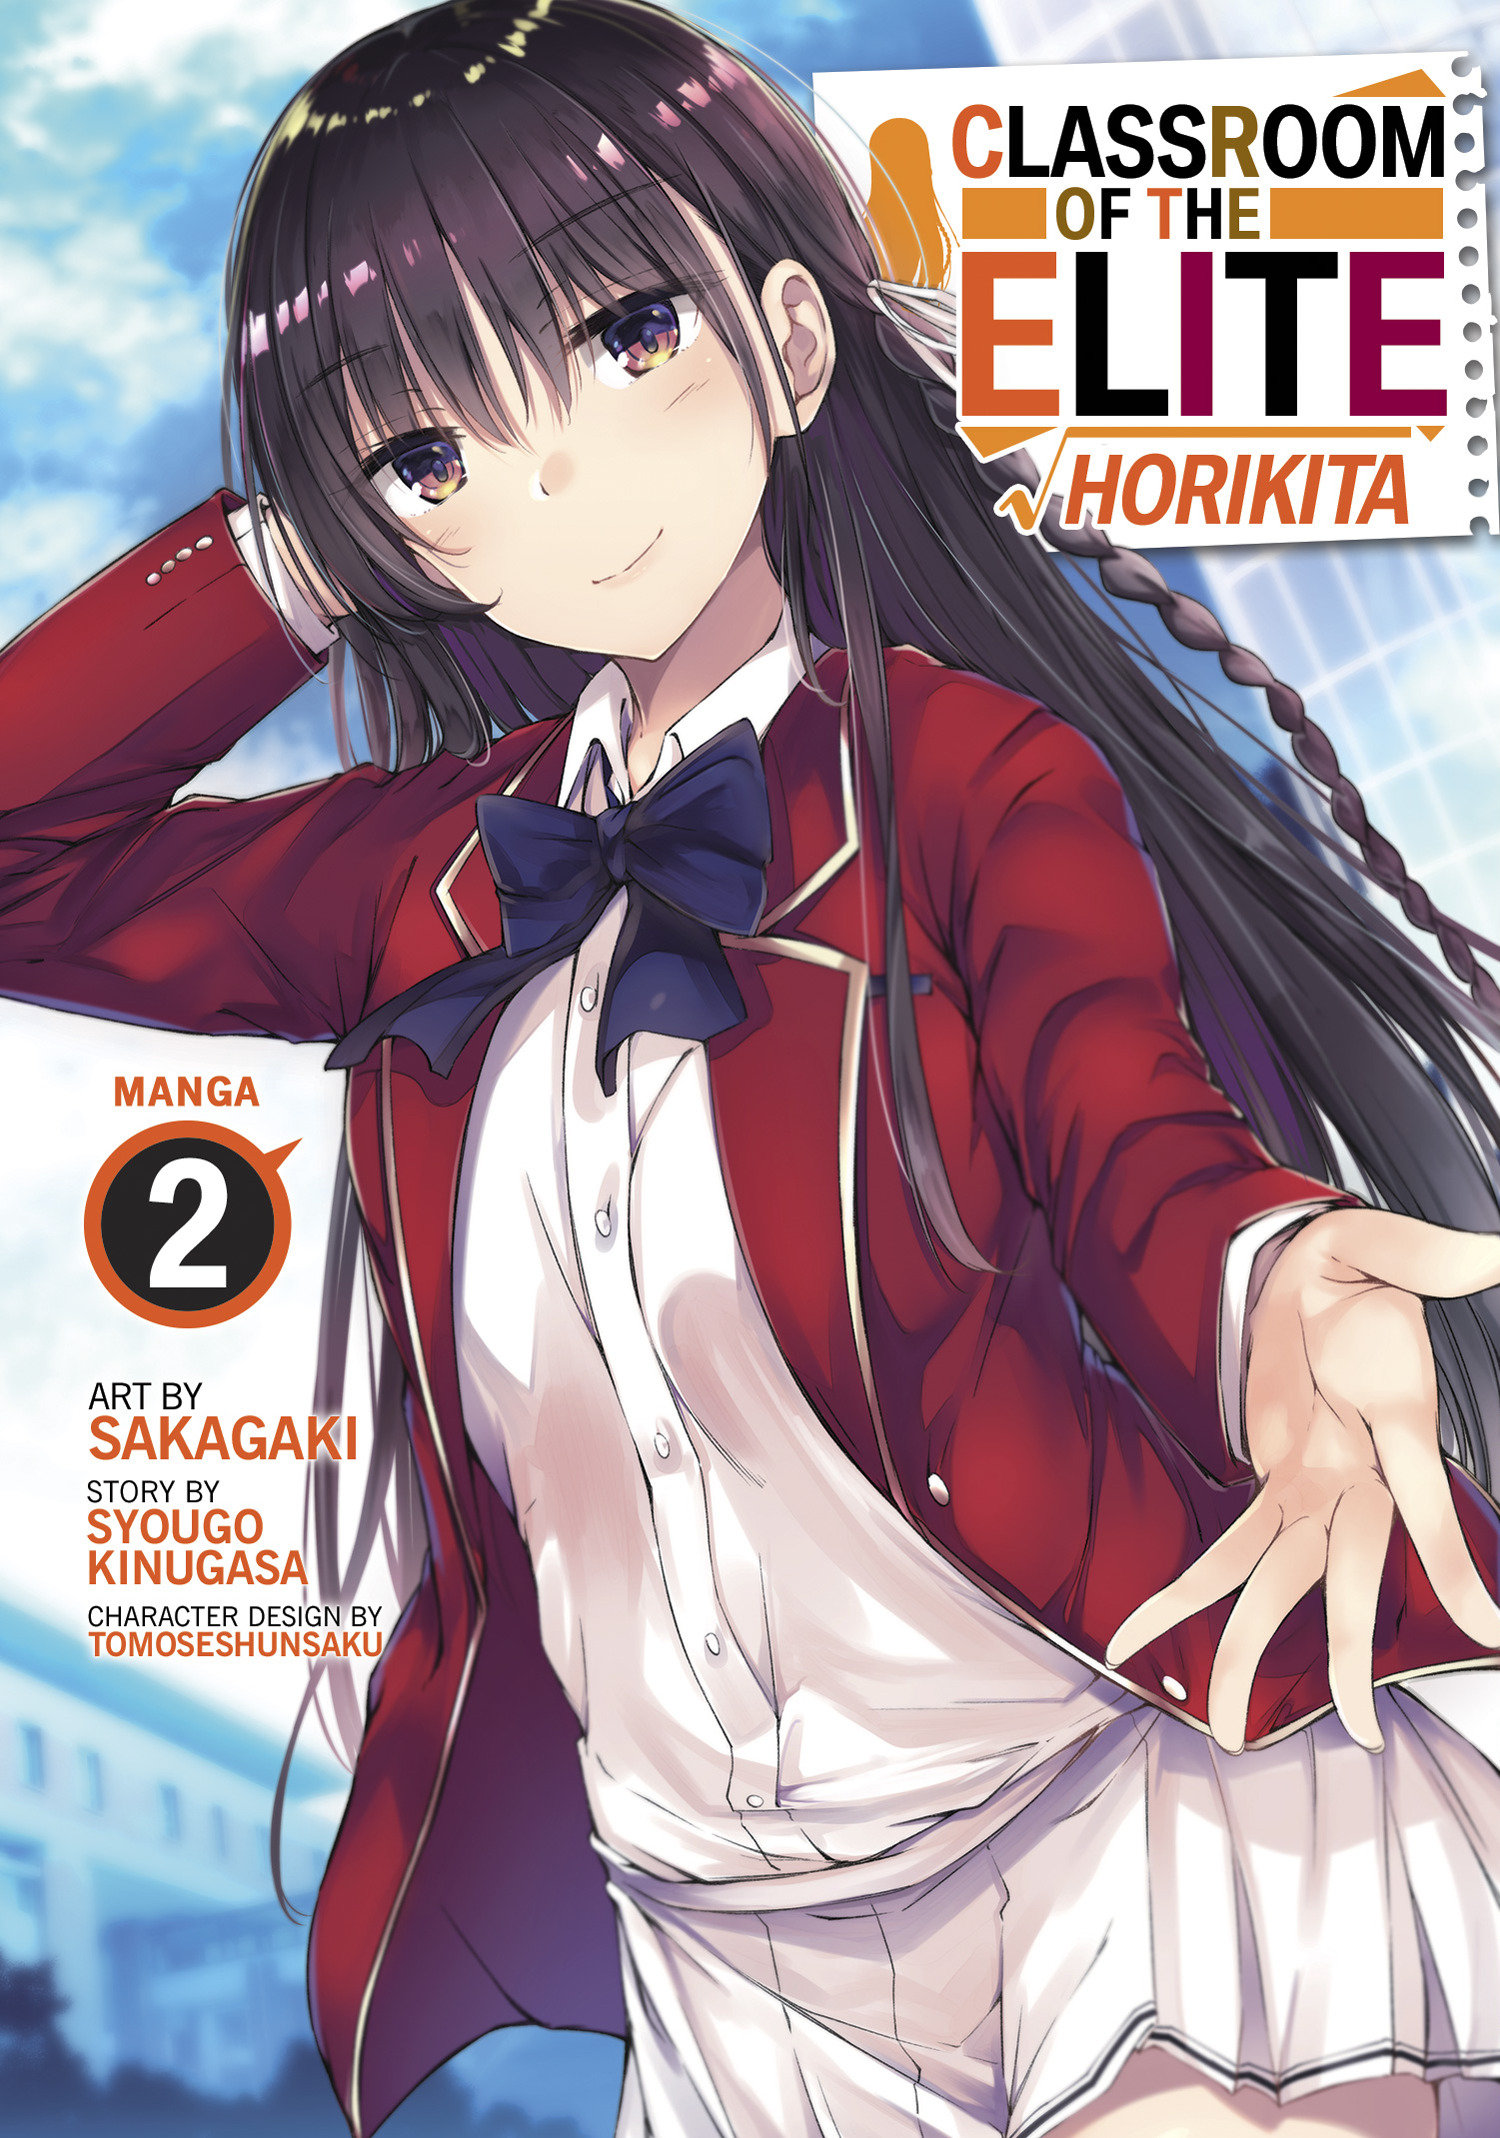 Classroom of Elite Horikita Manga Volume 2